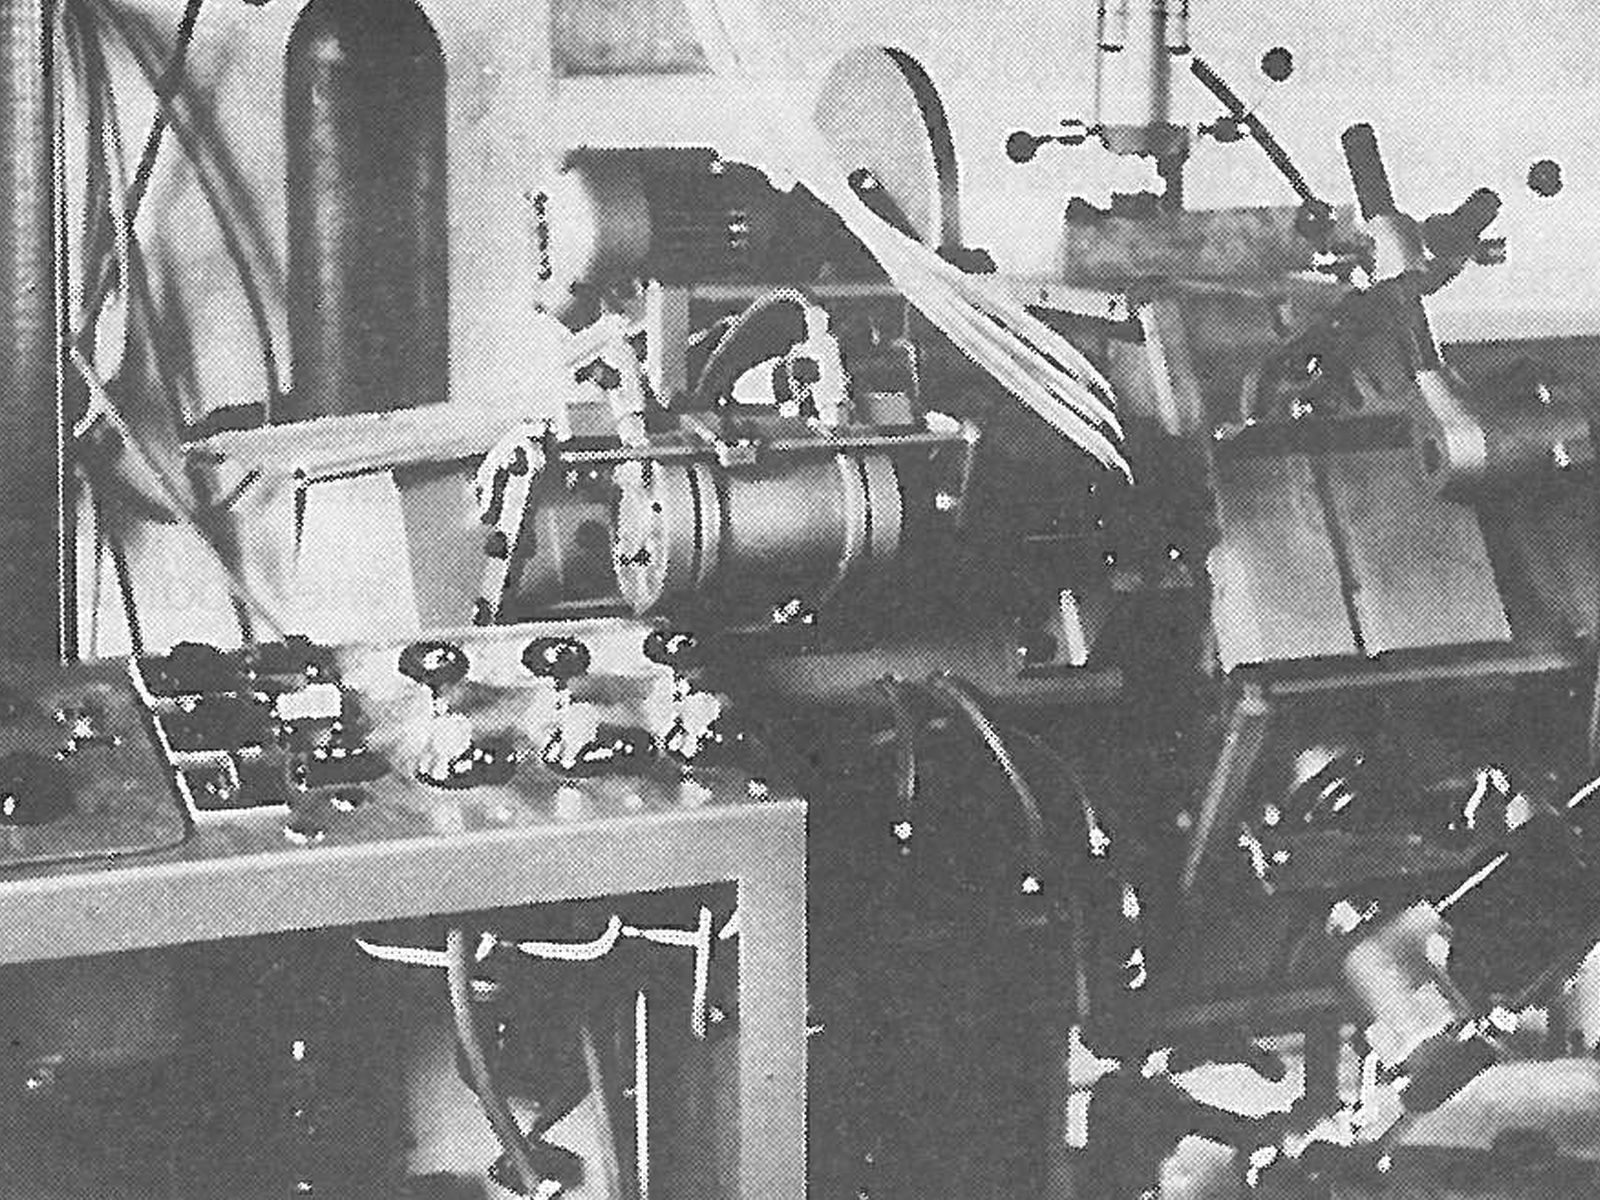  Schopflocher Skizzen Dübelautomat - Bild wird mit einem Klick vergrößert 